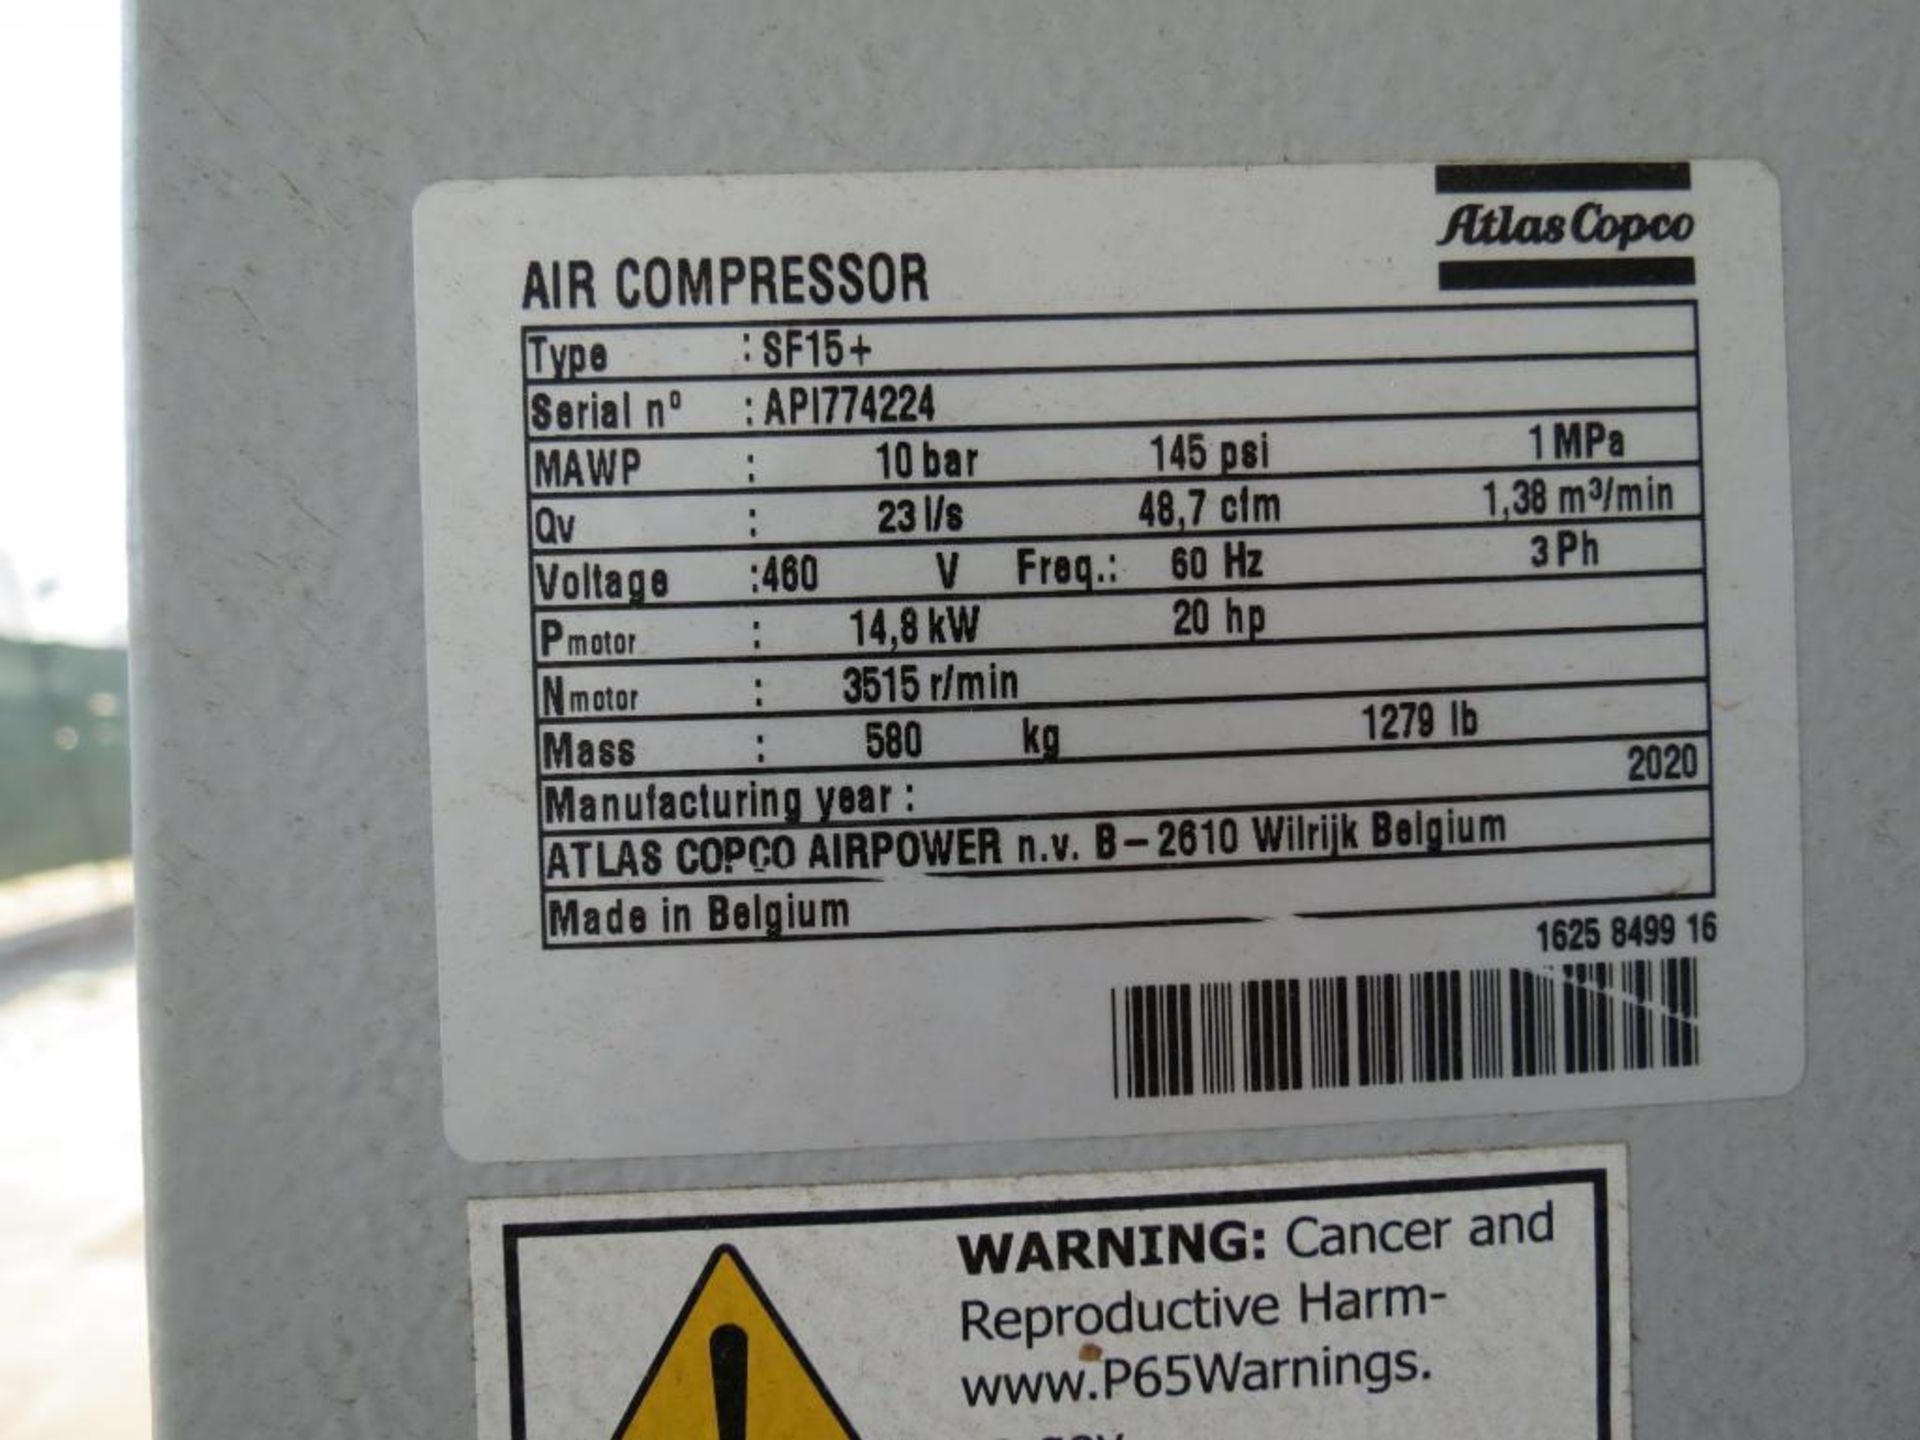 Atlas Copco Air Compressor #SF 15+ 145 P HC 460 V 60 API, SN: API774224 - Image 3 of 4